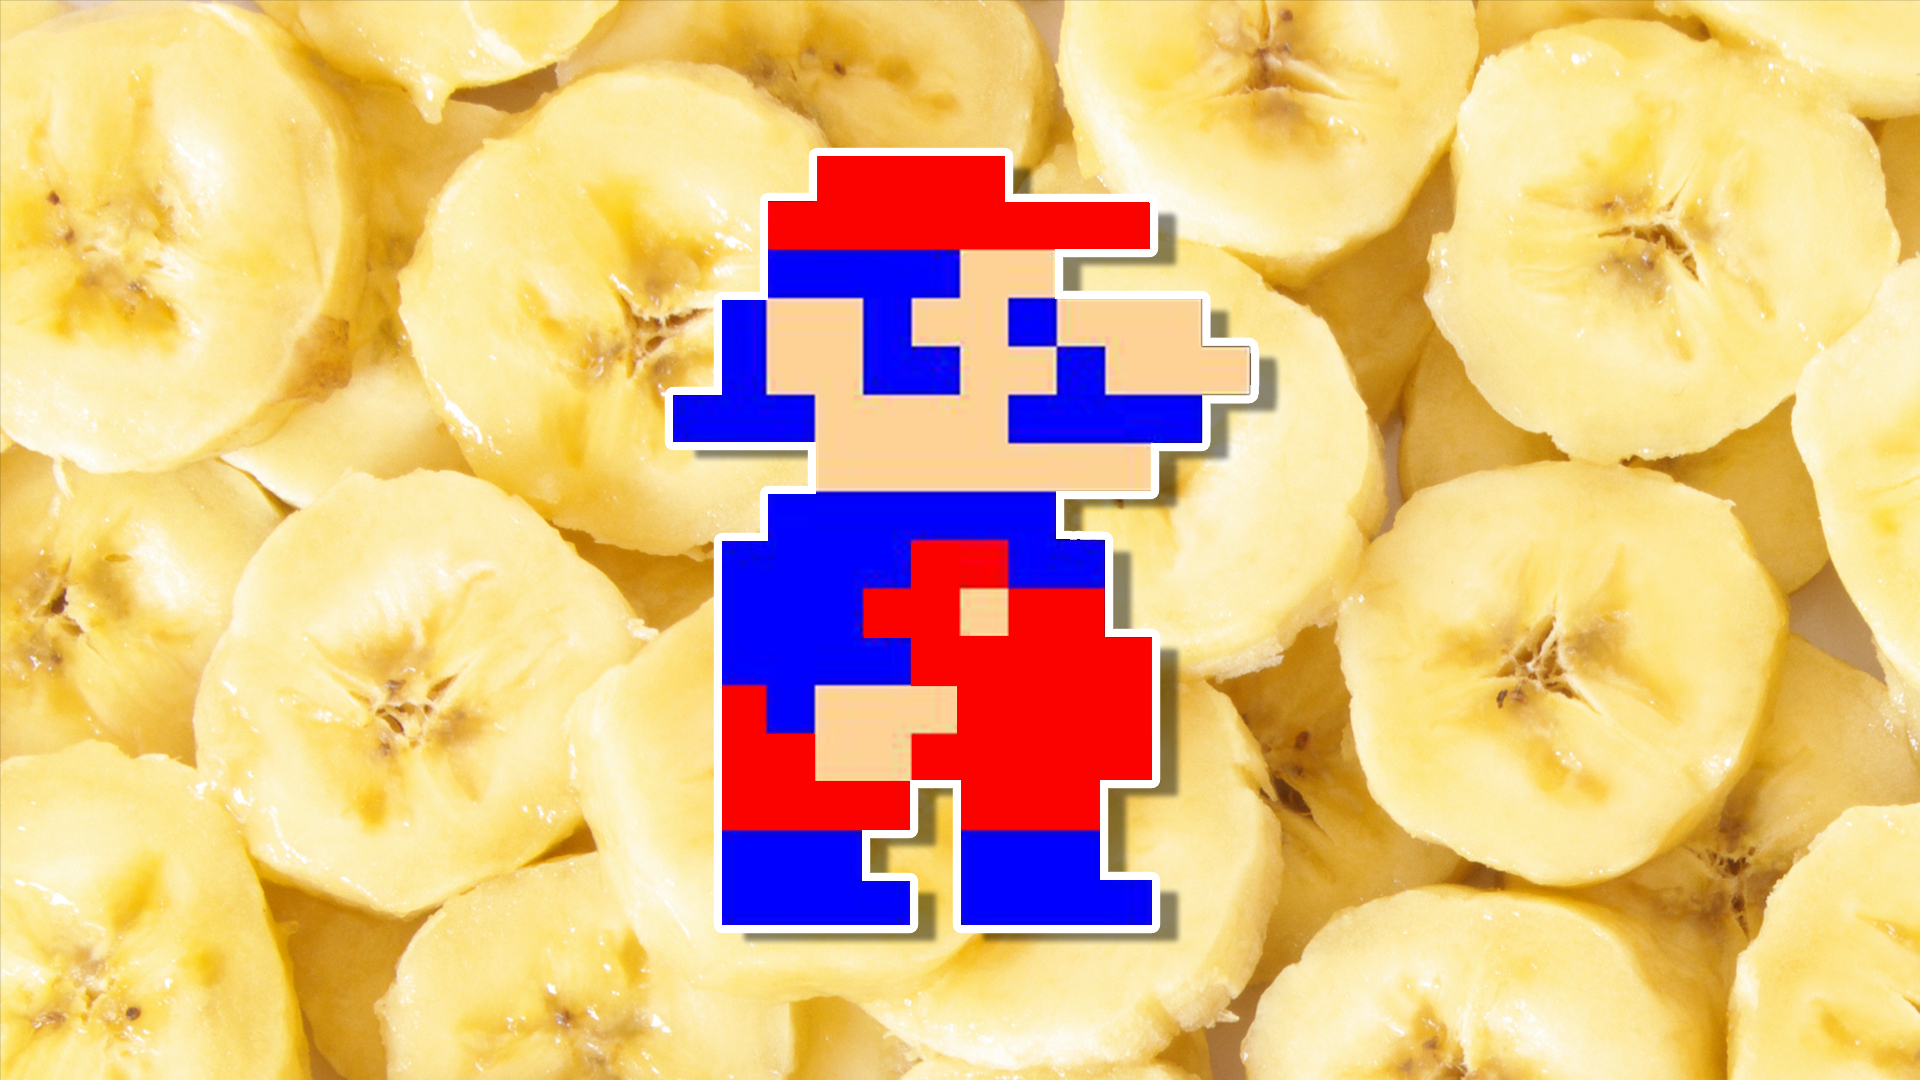 Mario in Donkey Kong